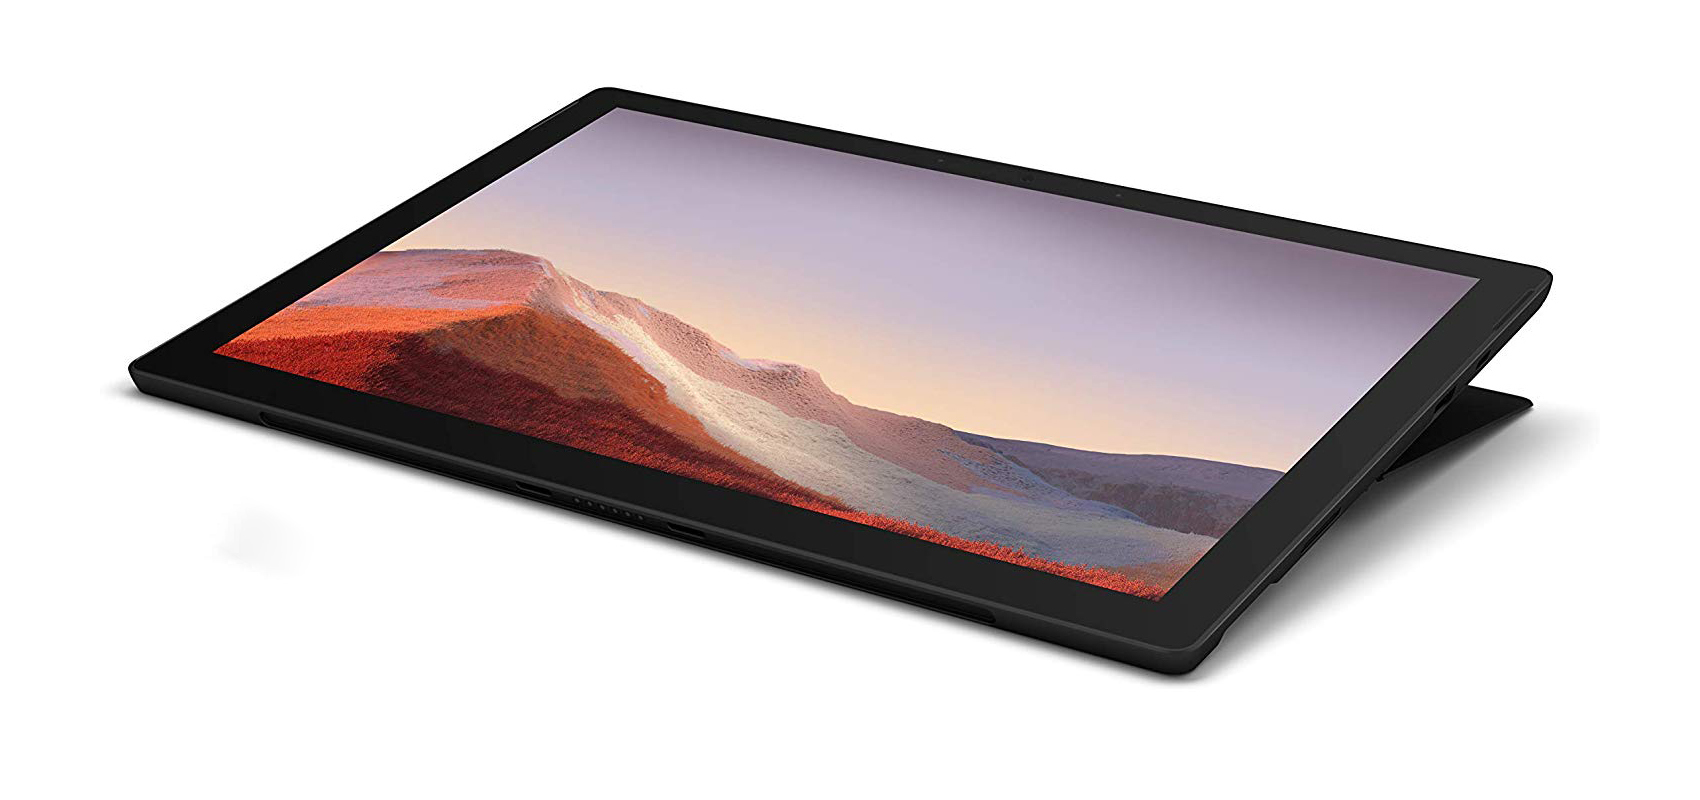 جهاز Microsoft Surface Pro 7 بالمعالج i5-1035G4/ ذاكرة الوصول العشوائي 8 جيجابايت/محرك أقراص صلبة من النوع SSD سعة 256 جيجابايت/أسود + غطاء أسود